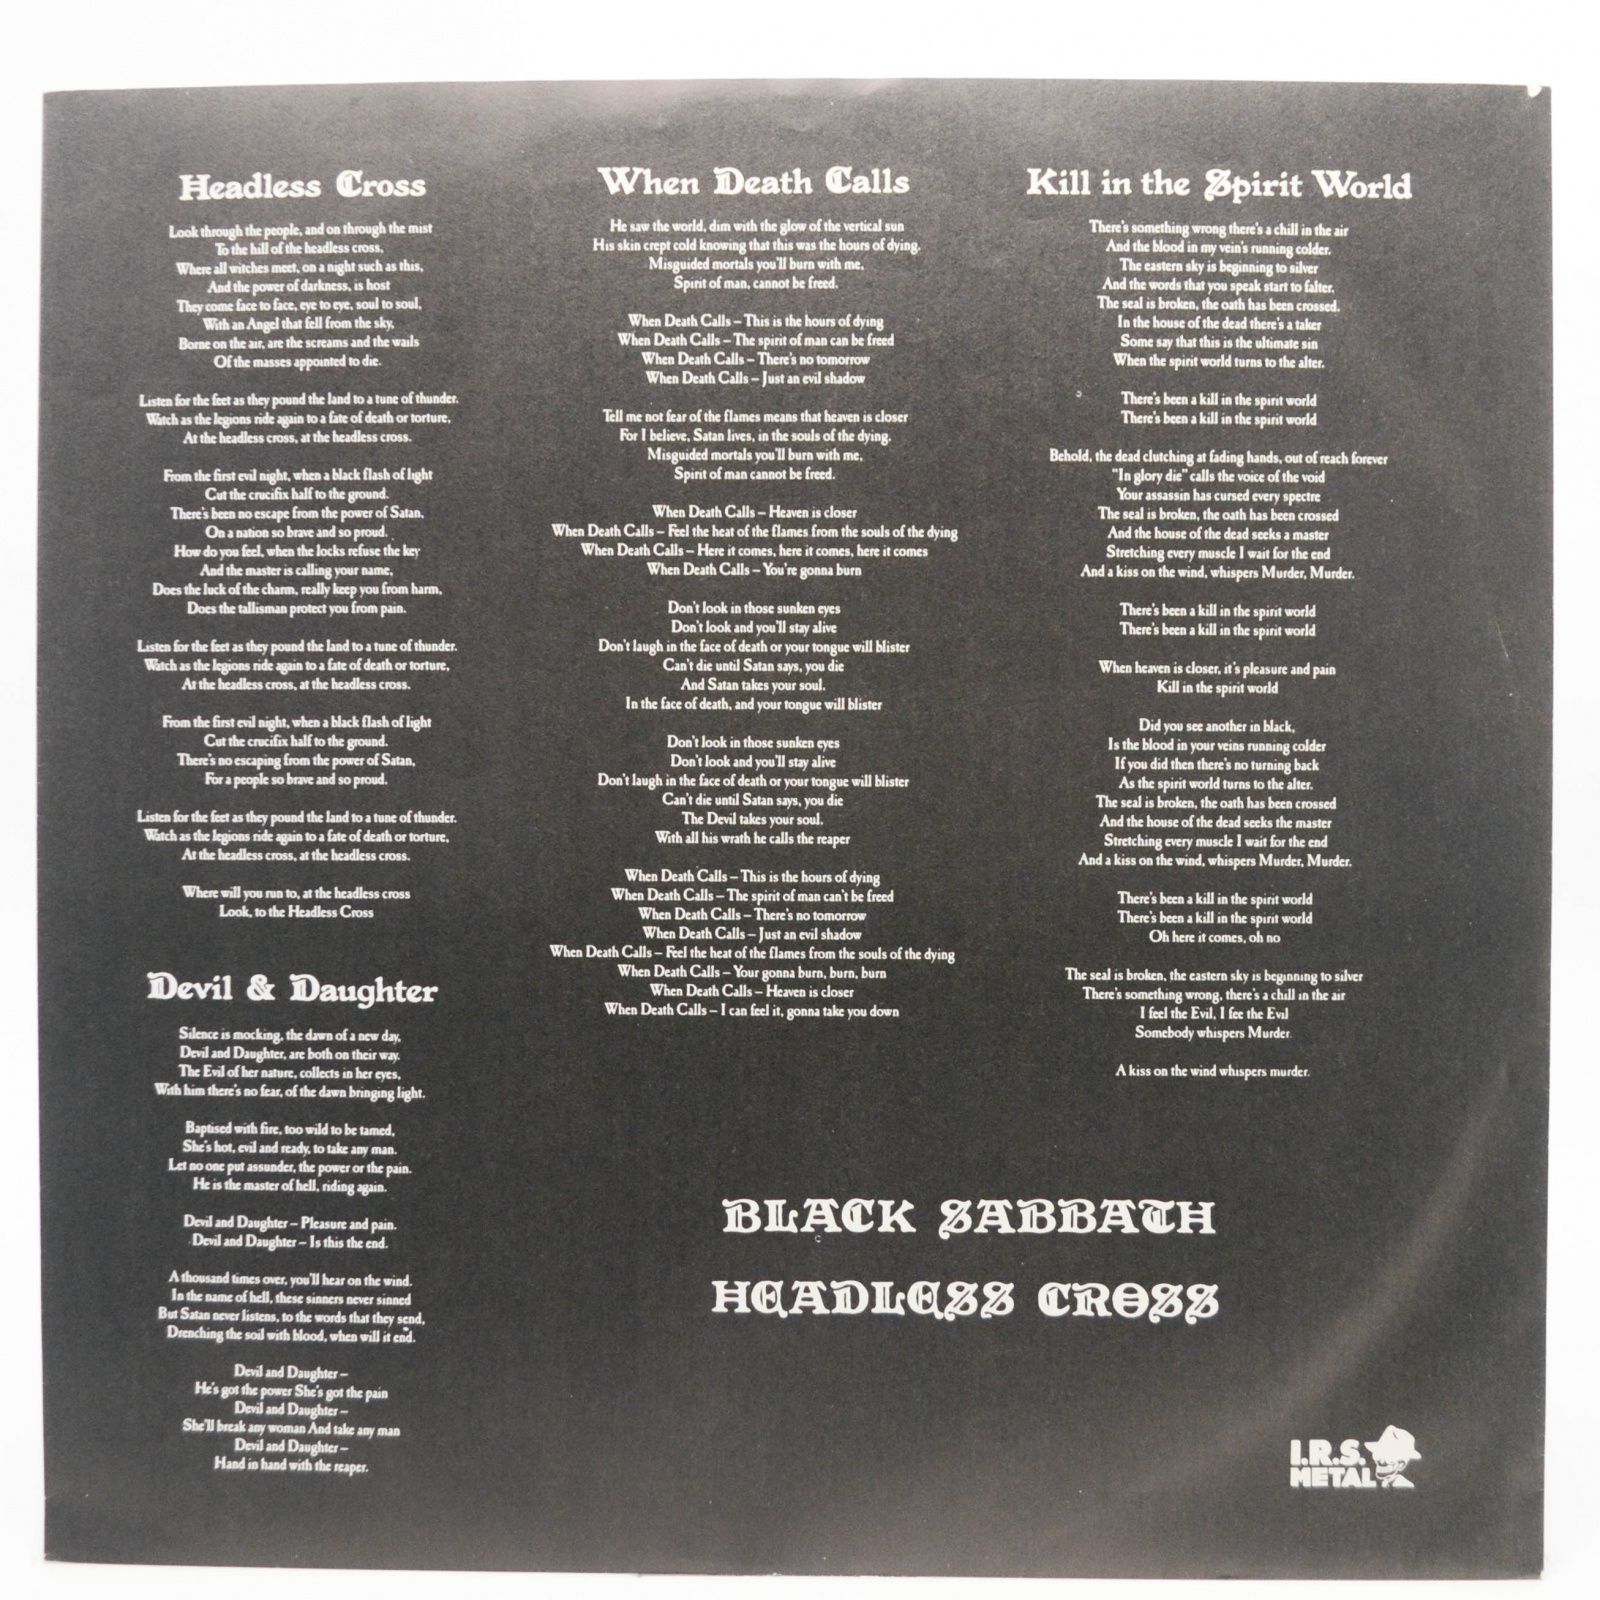 Black Sabbath — Headless Cross, 1989